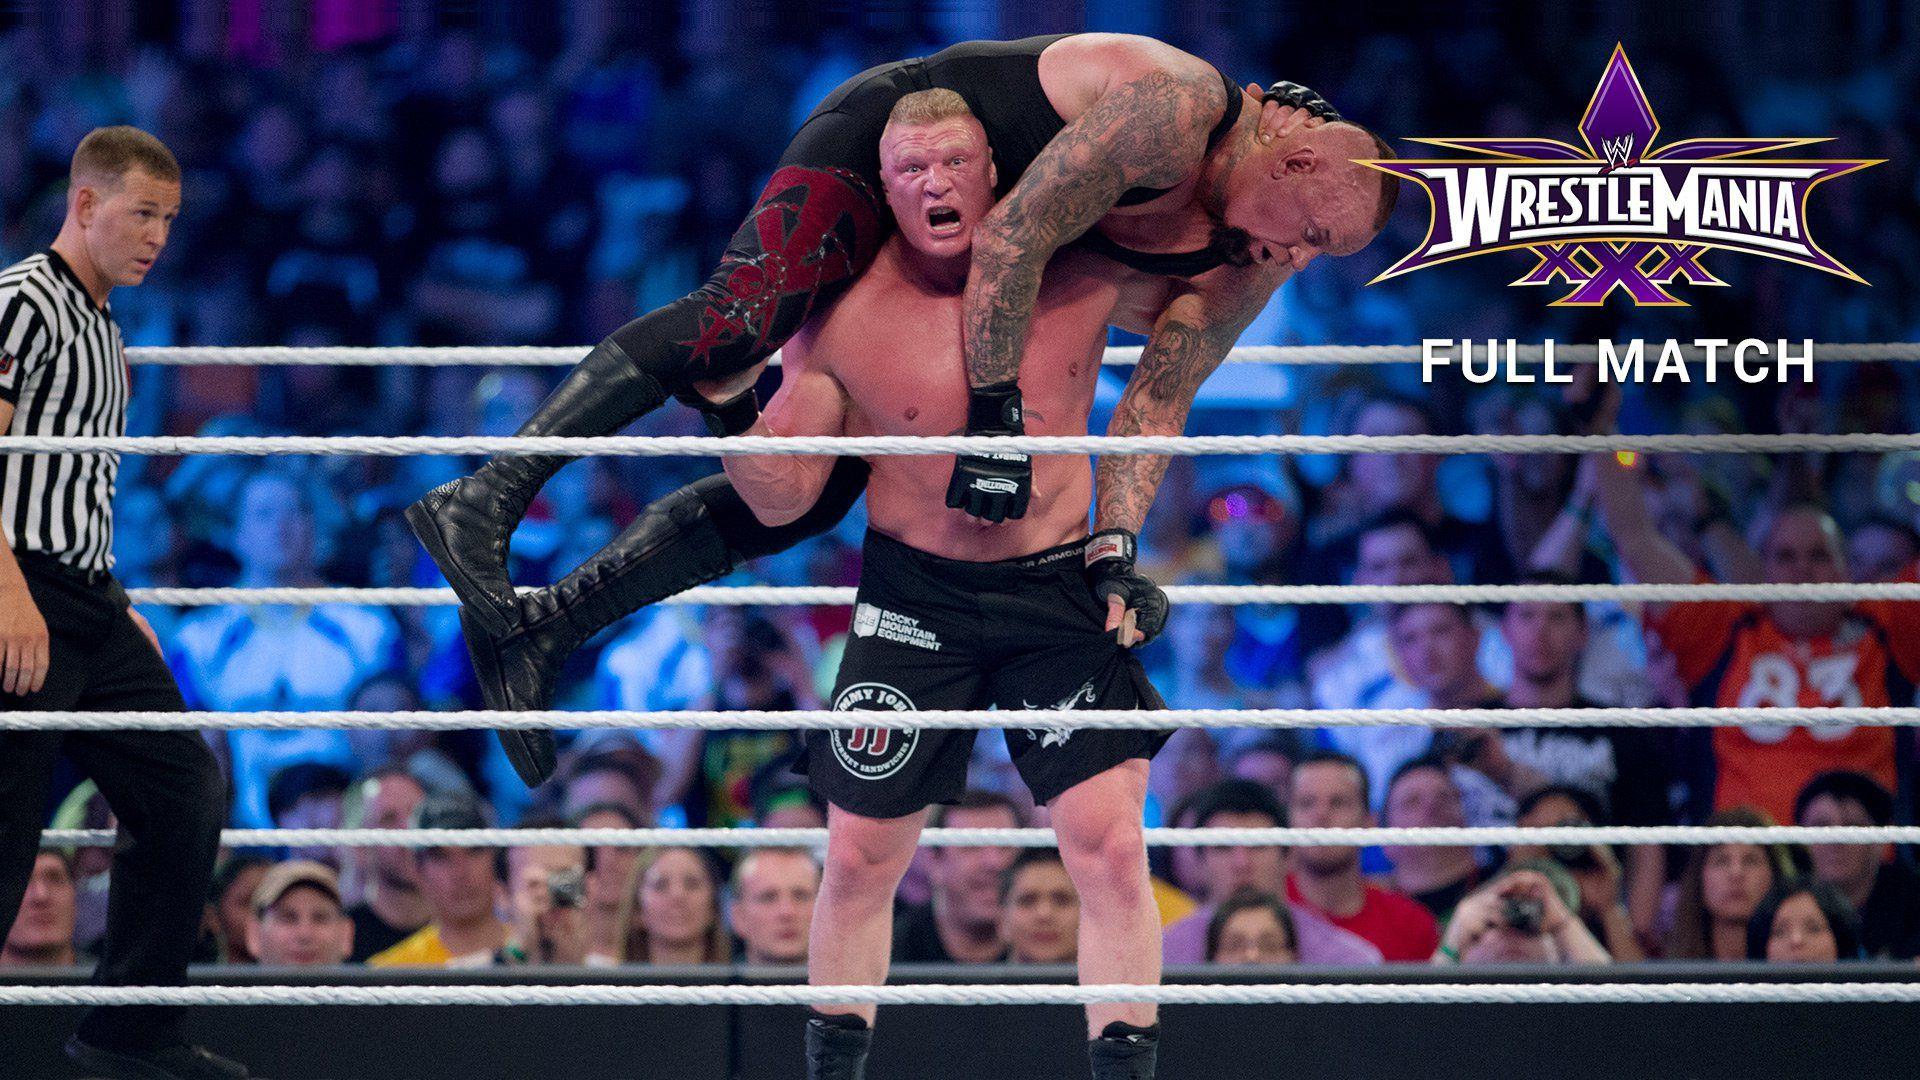 The Undertaker vs. Brock Lesnar 30 Full Match